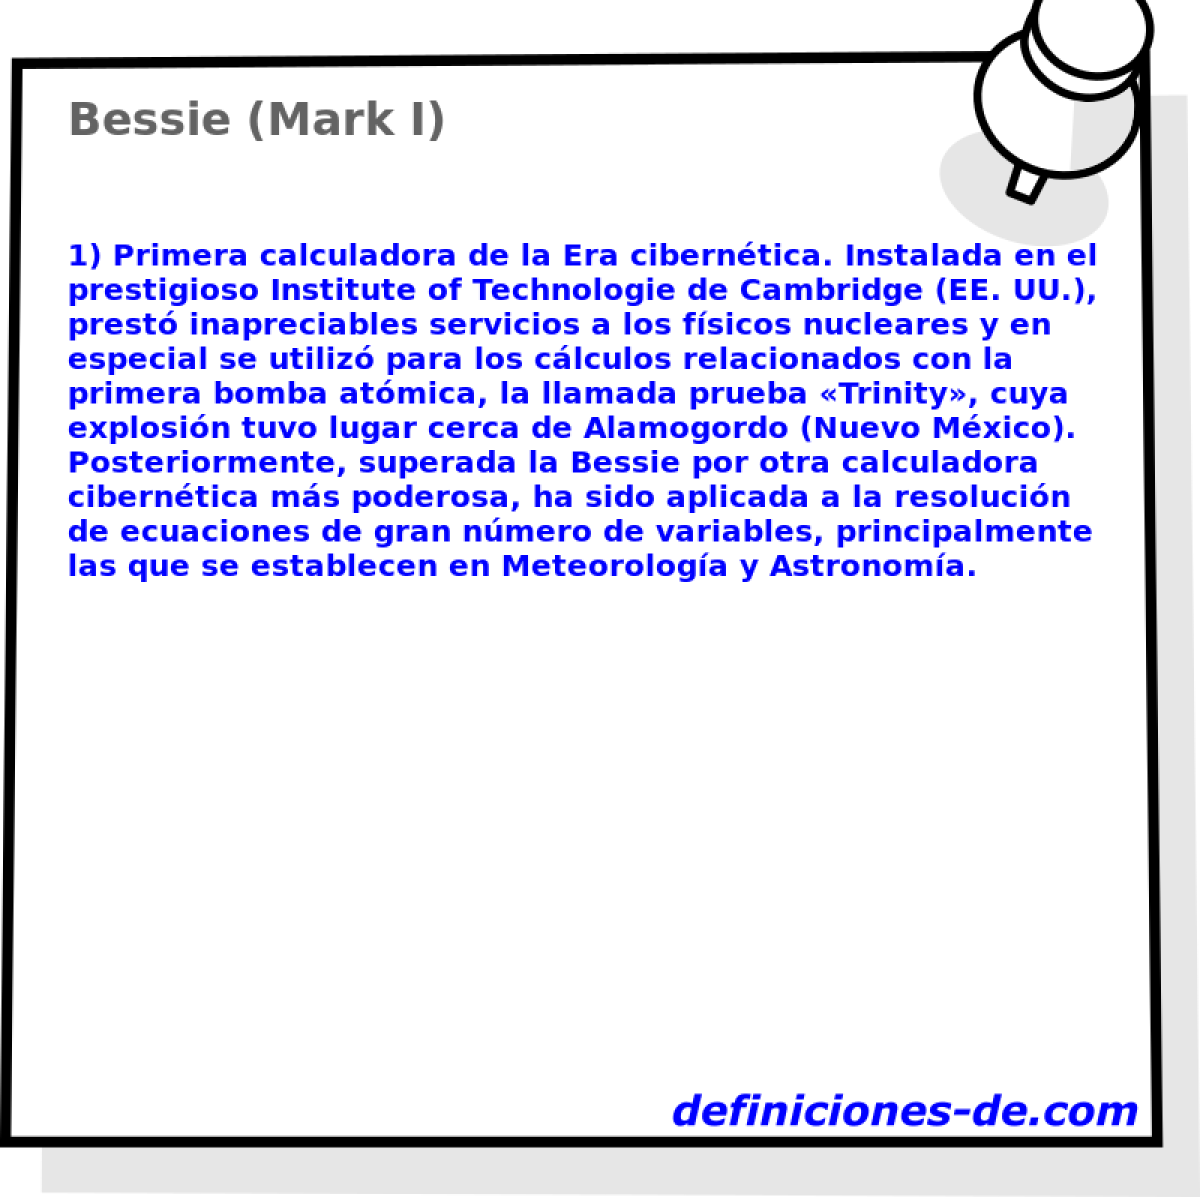 Bessie (Mark I) 